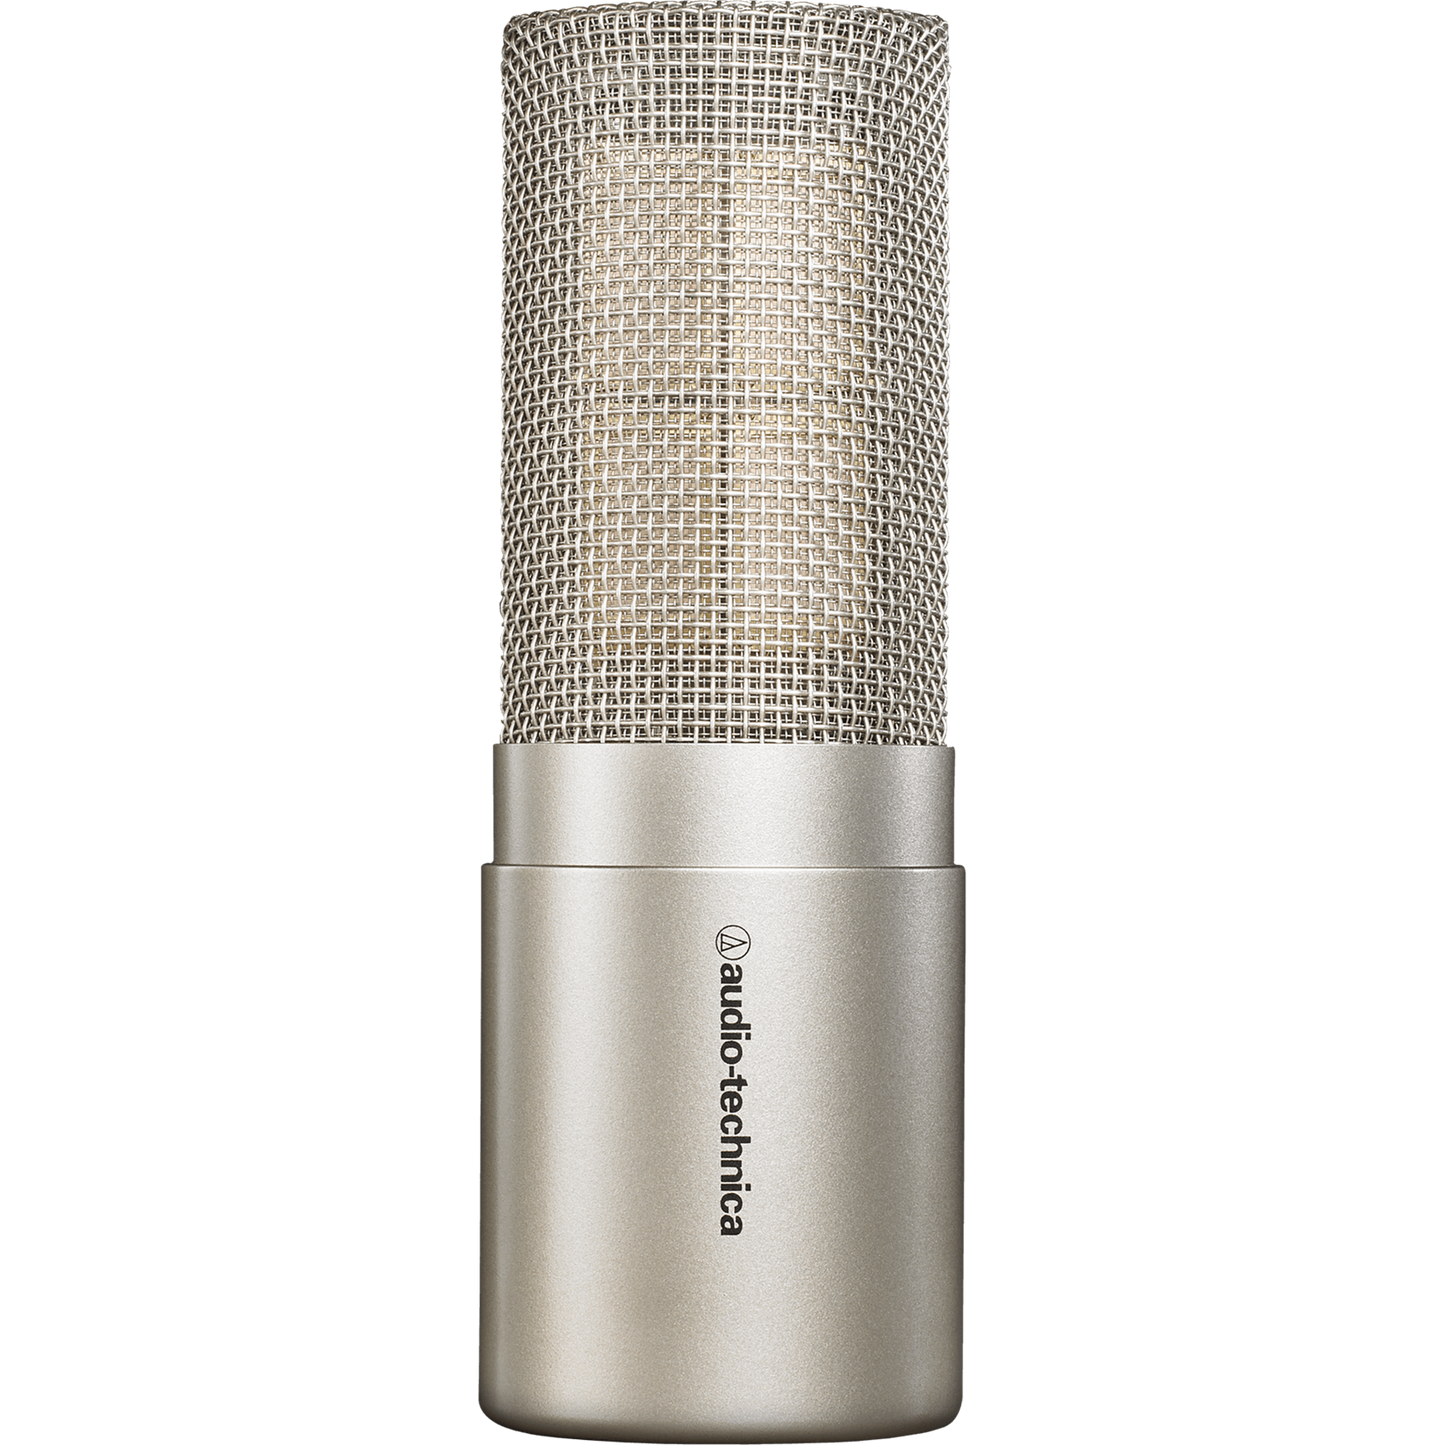 Audio Technica AT5047 Large Diaphragm Cardioid Condenser Studio Microphone